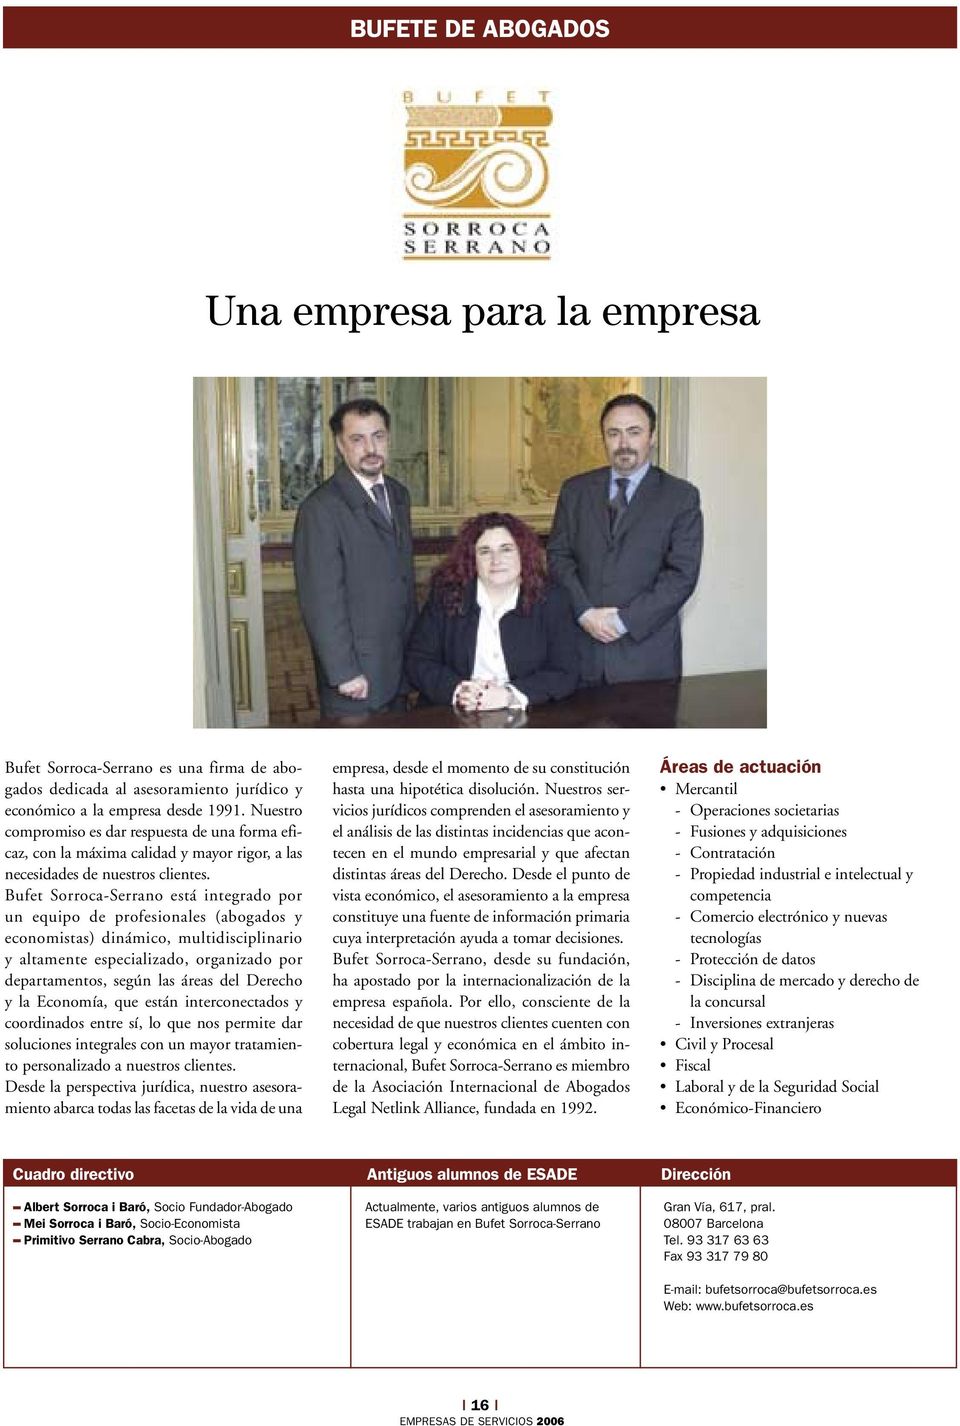 Bufet Sorroca-Serrano está integrado por un equipo de profesionales (abogados y economistas) dinámico, multidisciplinario y altamente especializado, organizado por departamentos, según las áreas del